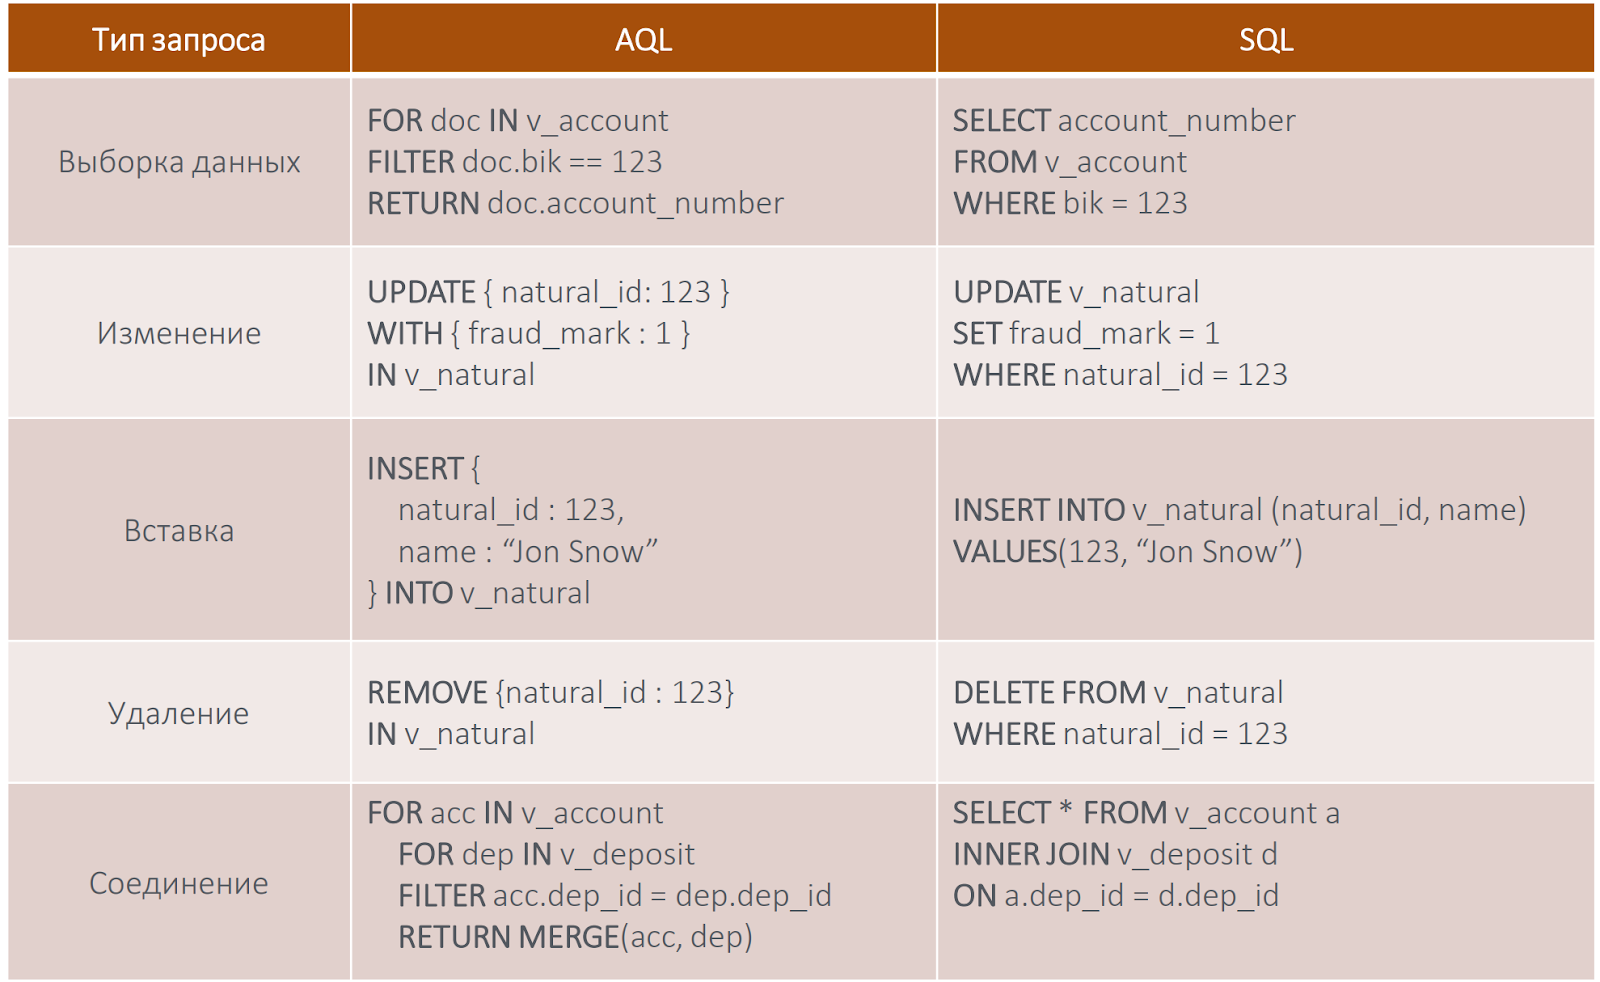 Рис. Сравнение основных операторов AQL и SQL